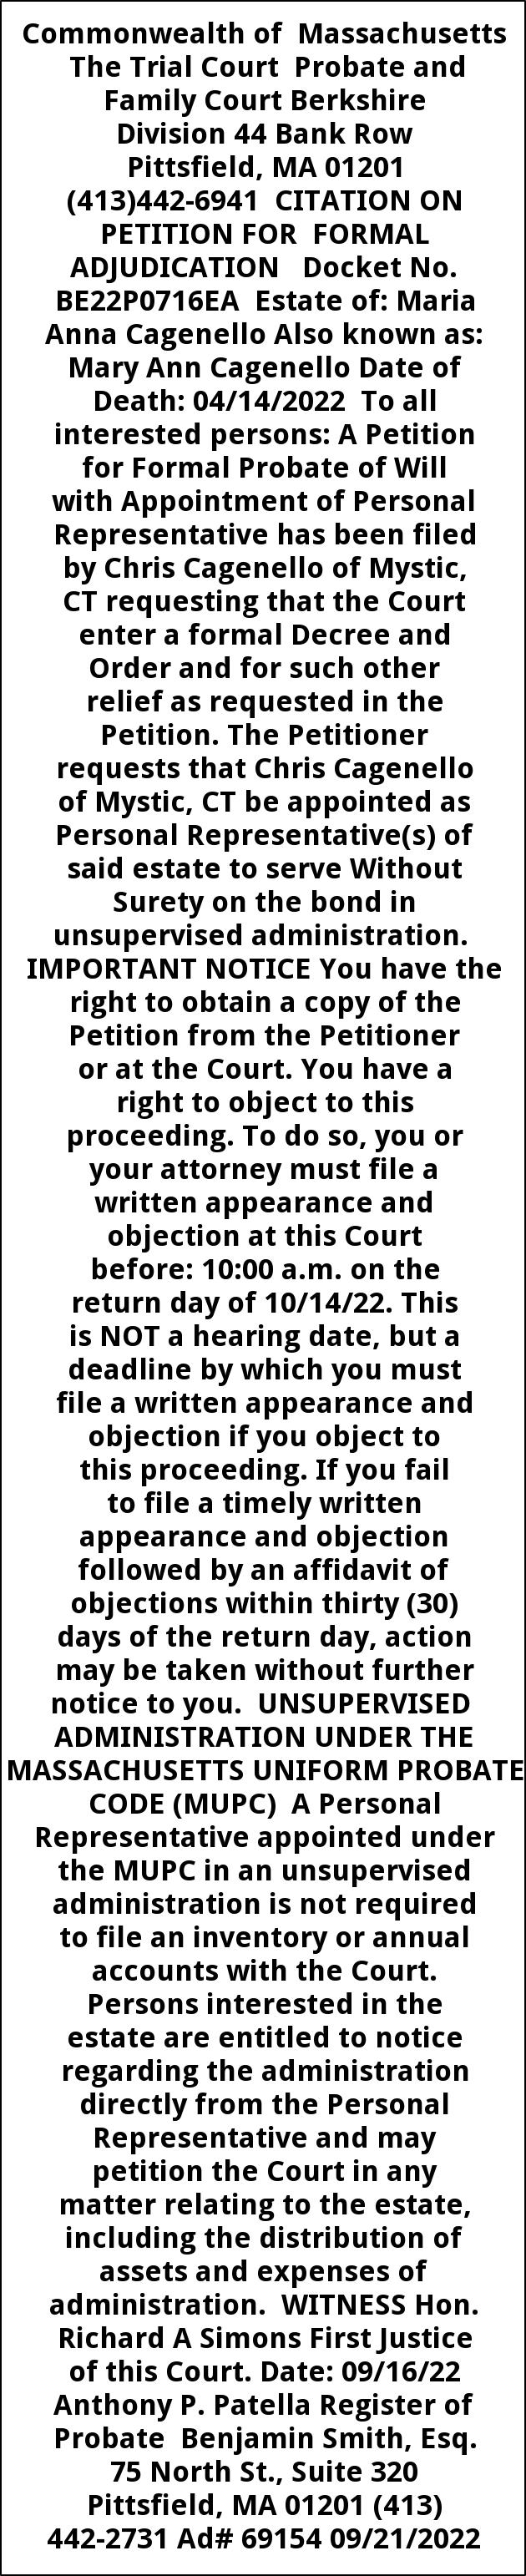 Citation On Petition for Formal Adjudication